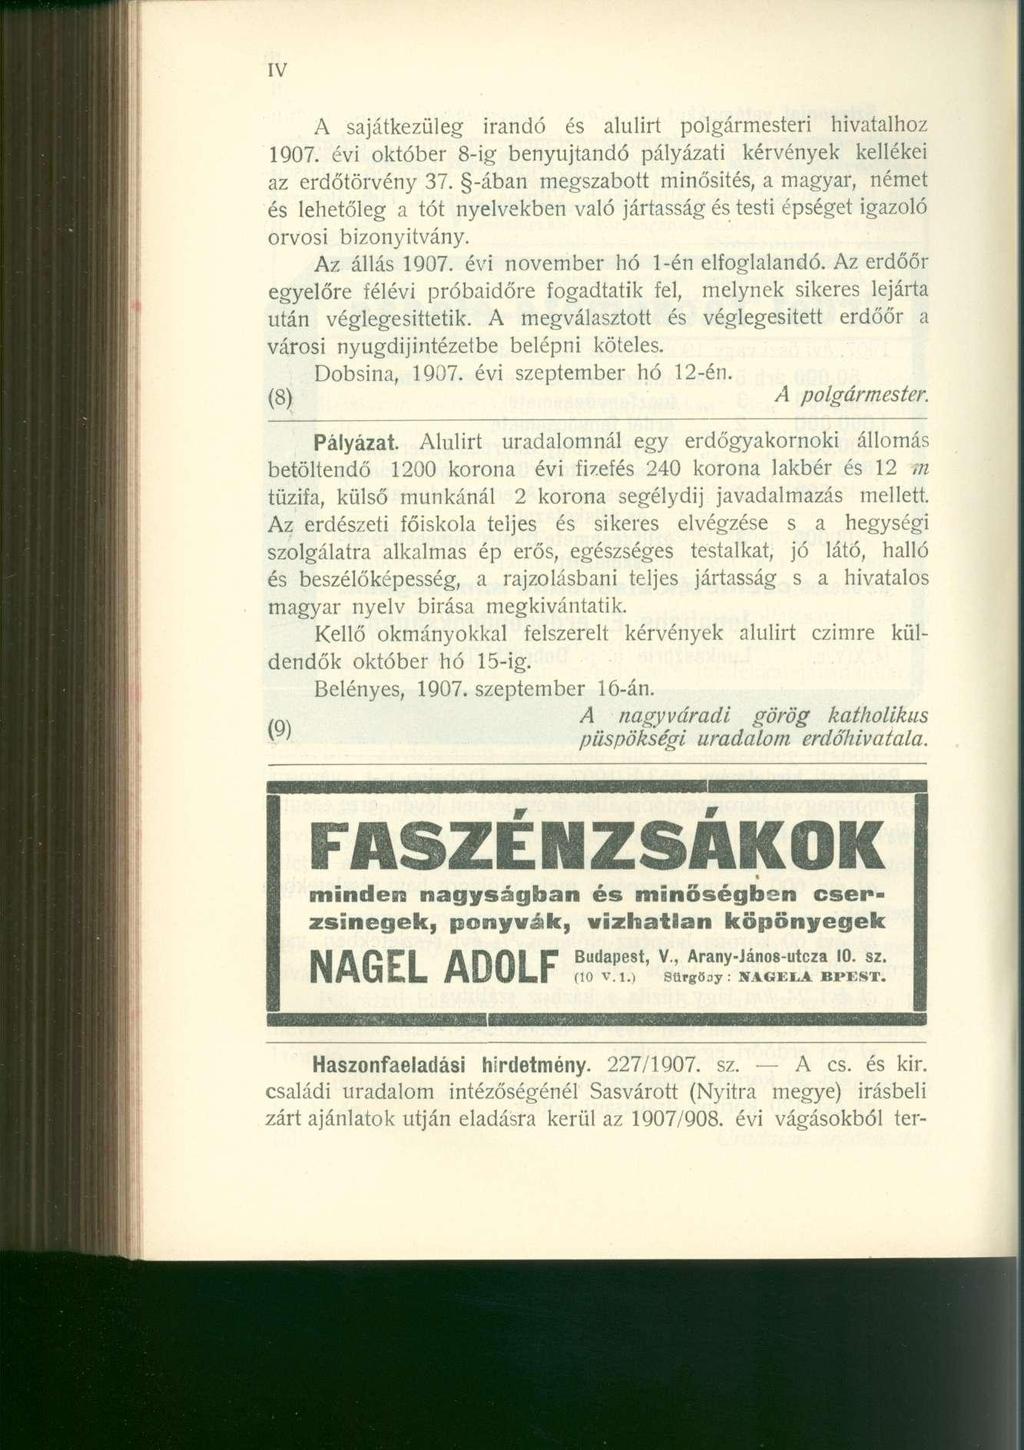 IV A sajátkezüleg irandó és alulirt polgármesteri hivatalhoz 1907. évi október 8-ig benyújtandó pályázati kérvények kellékei az erdőtörvény 37.